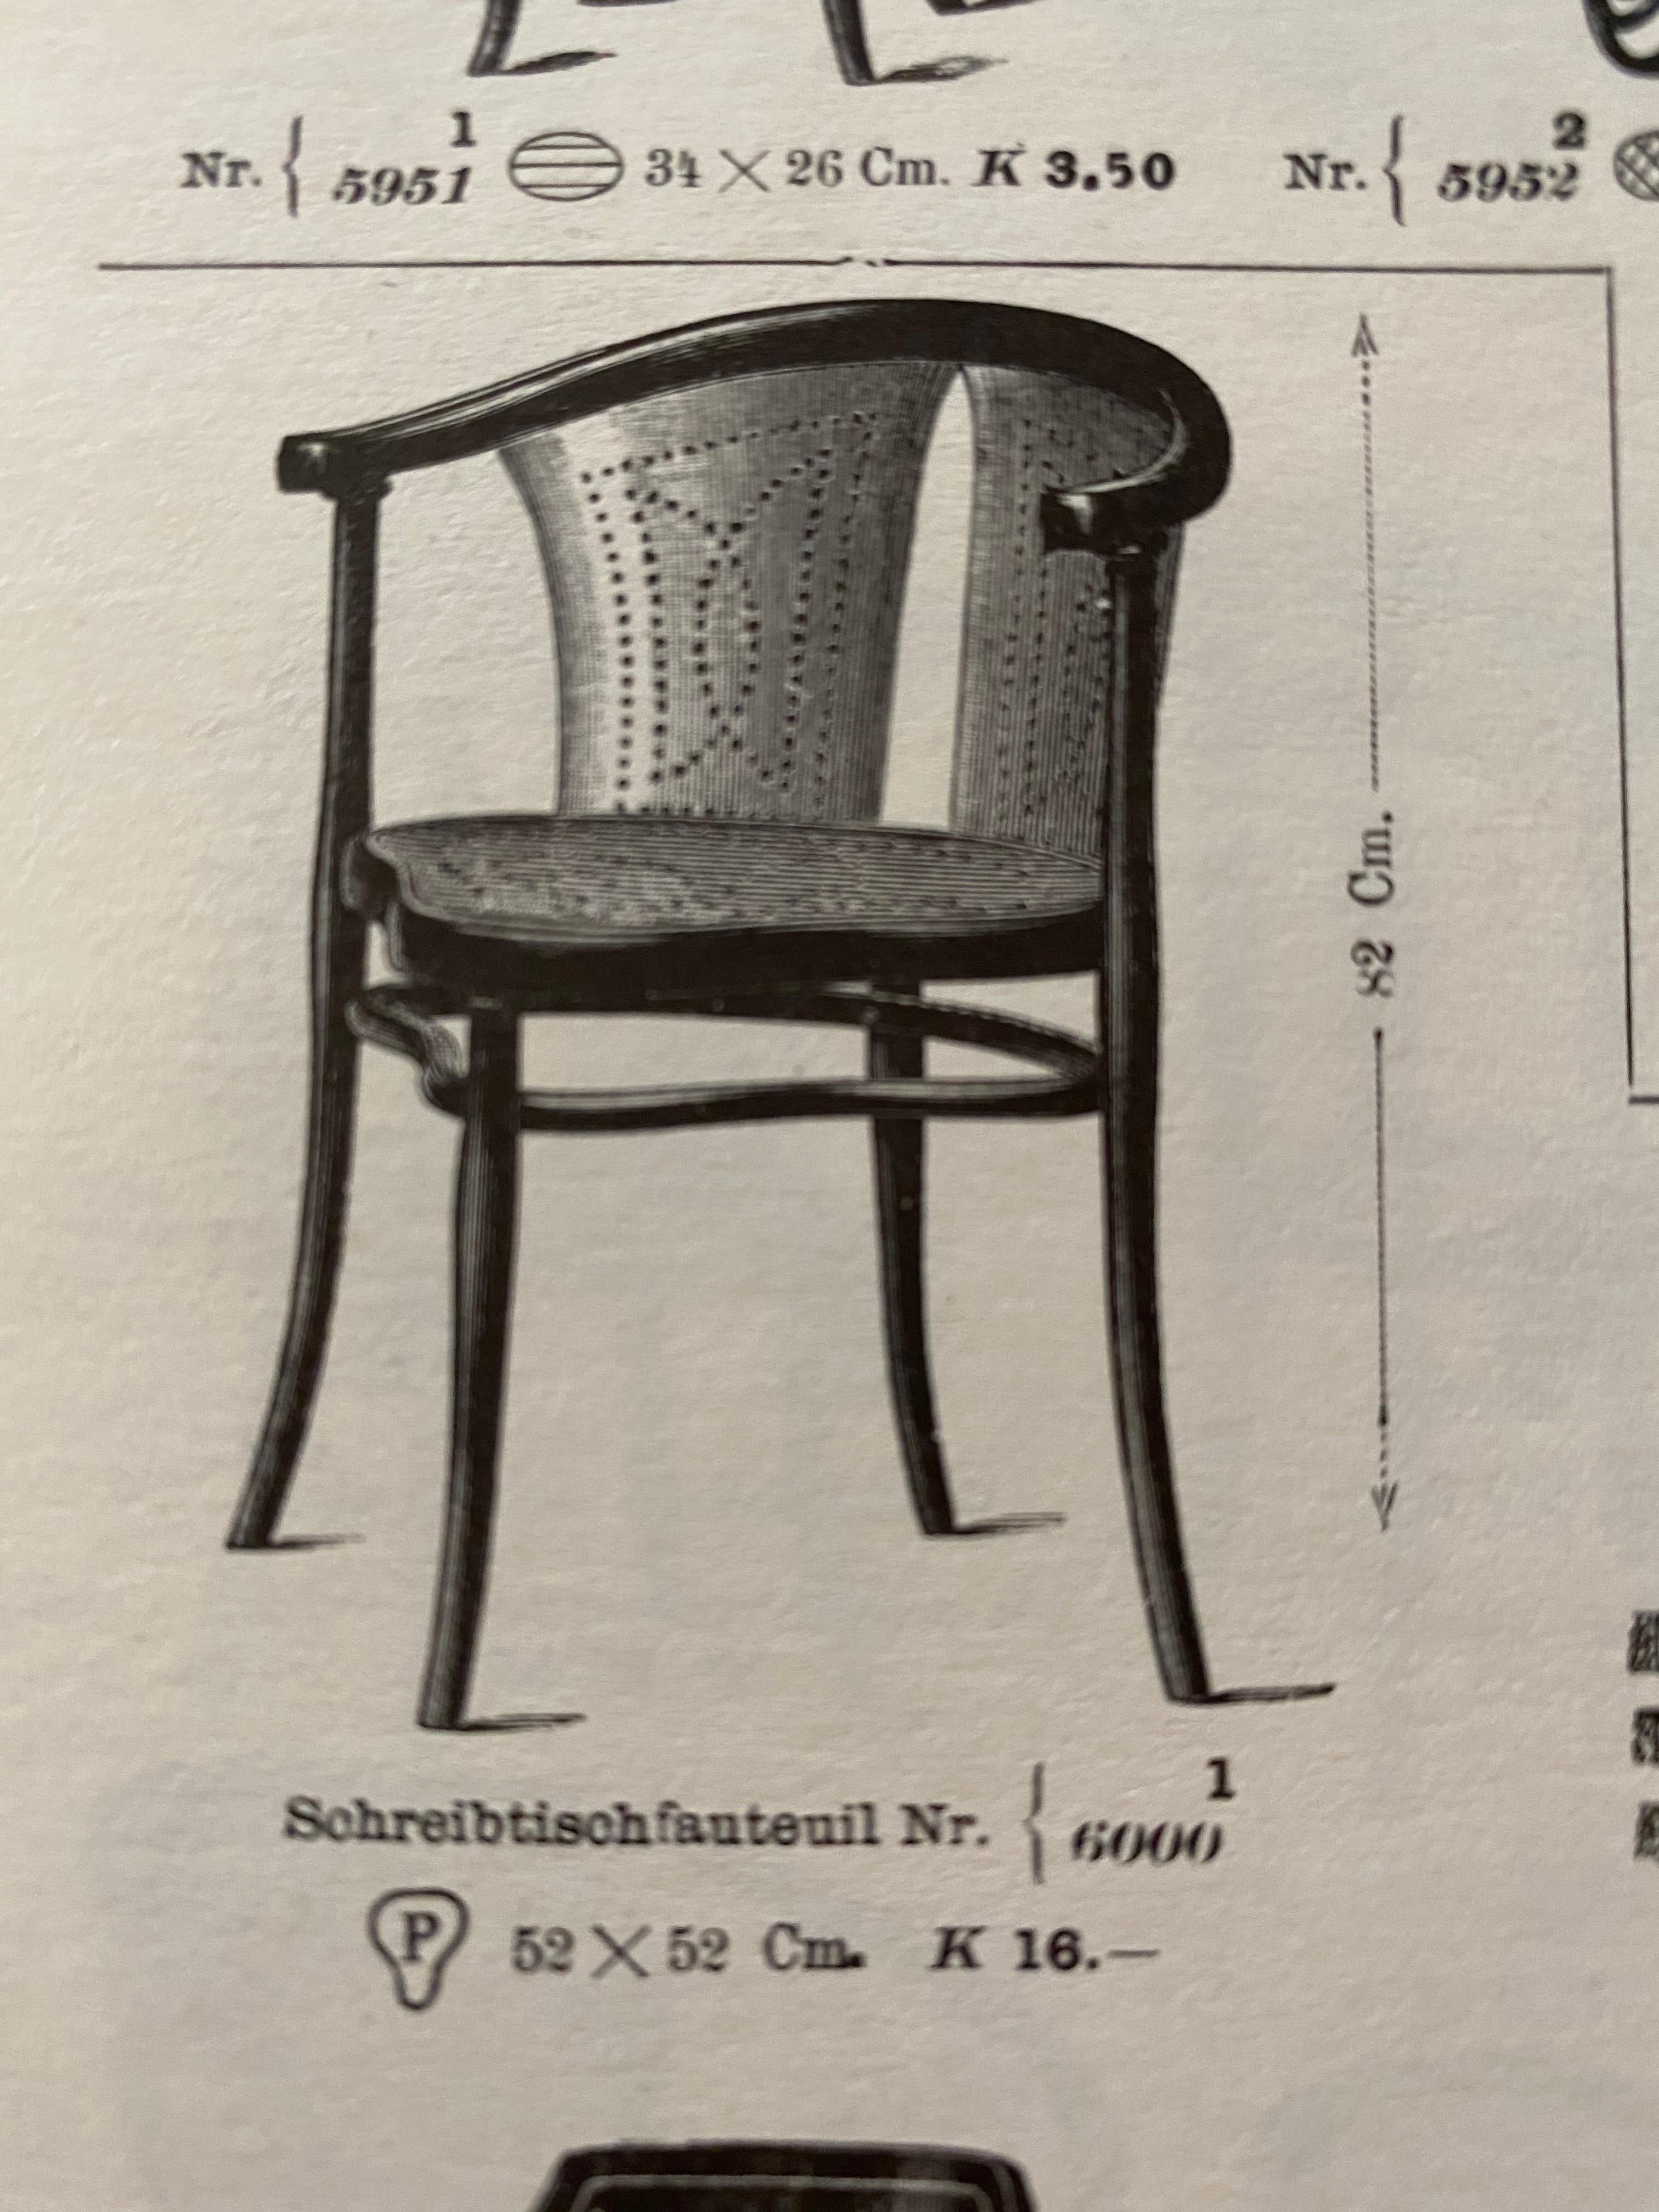 Rare Thonet Armchair Desk Chair Nr. 1 8